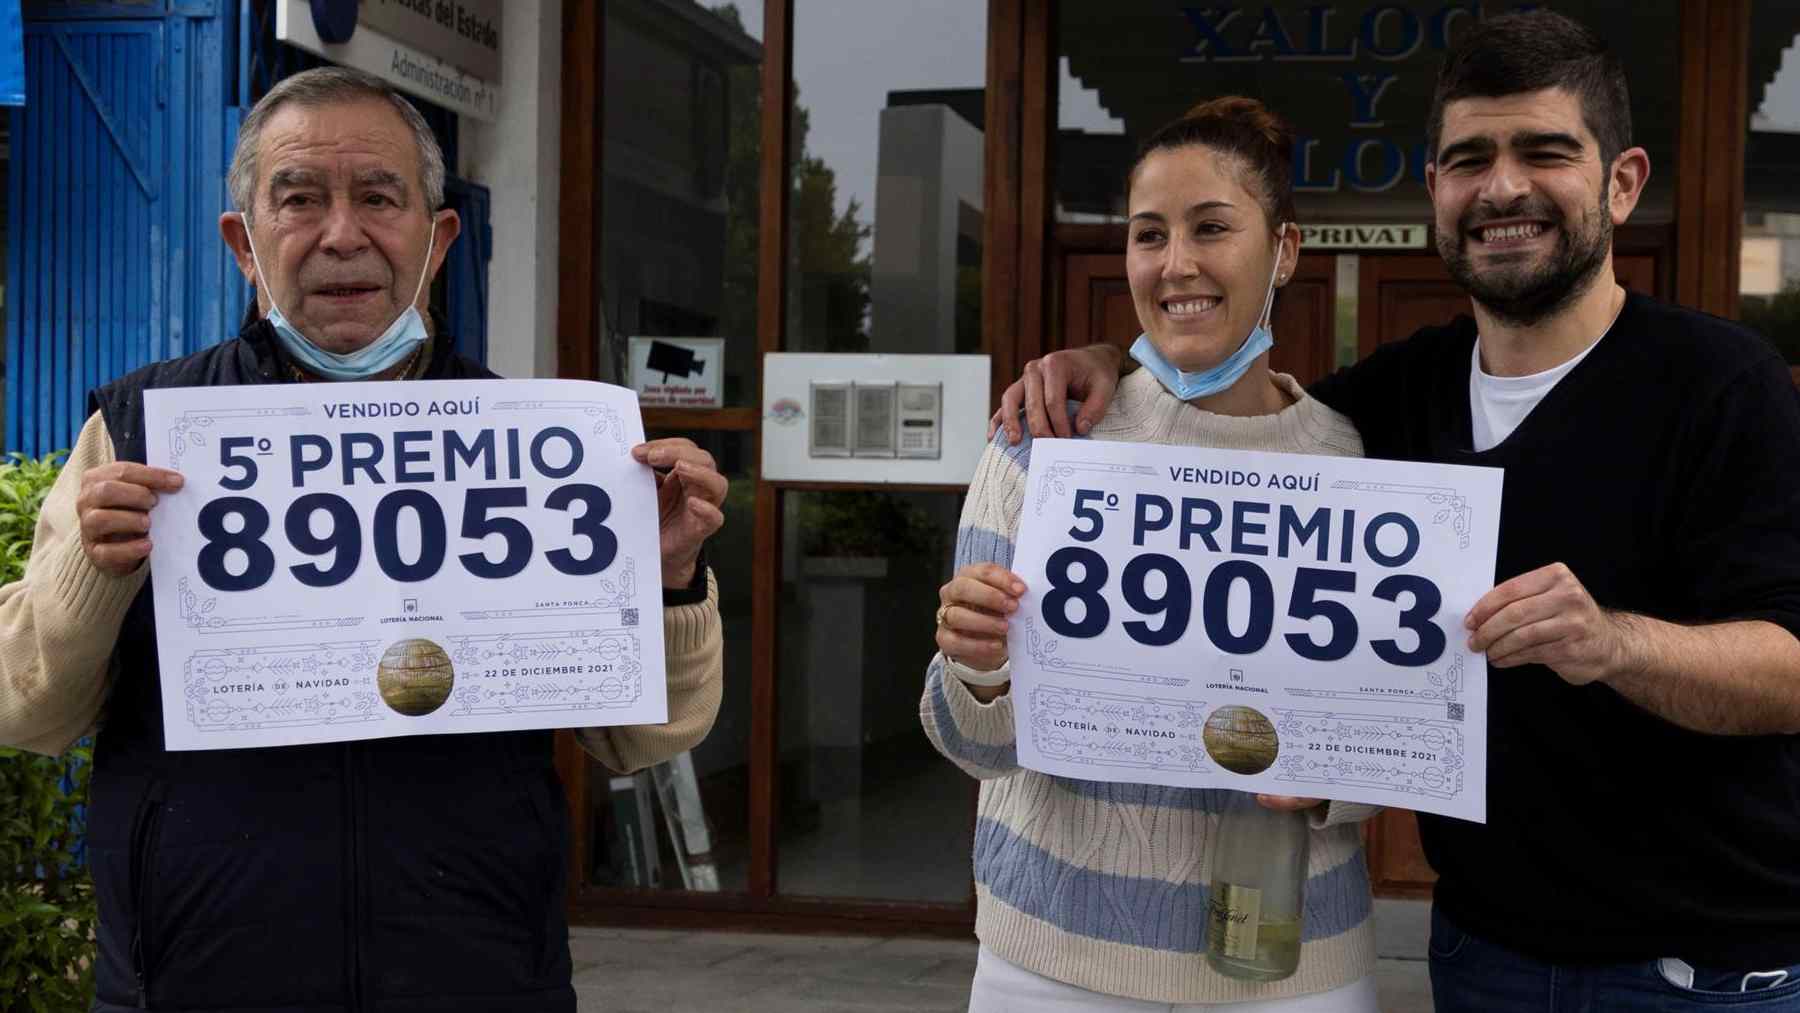 Administración de Lotería de Santa Ponça en la que se ha repartido el sexto quinto premio. Foto: Cati Cladera / EFE.